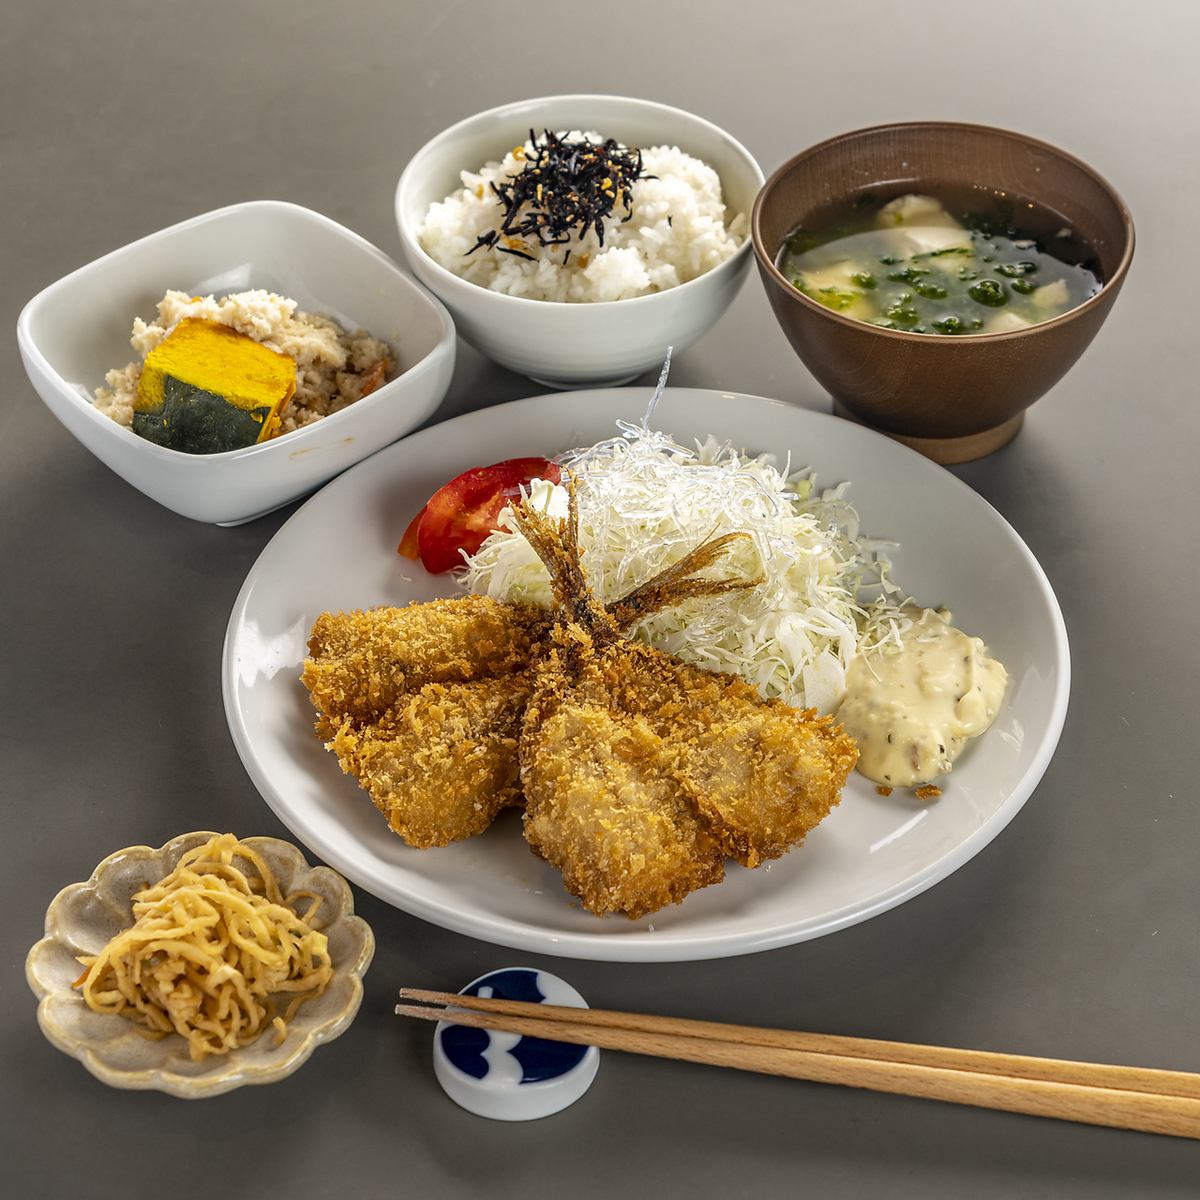 使用精心挑选的 Saiki 鱼的套餐可以全天订购。